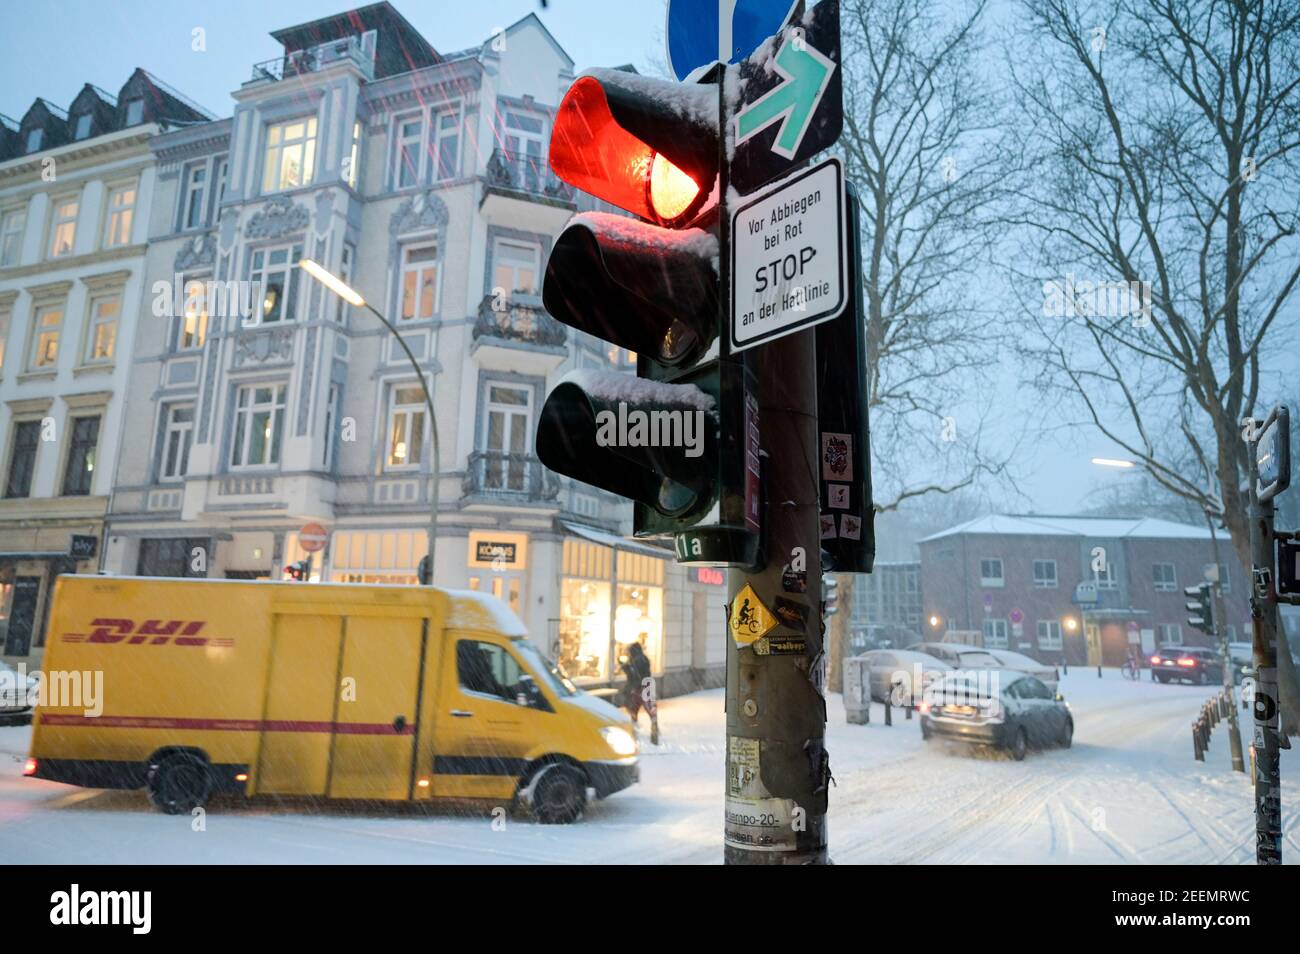 ALEMANIA, Hamburgo, invierno, nieve, semáforo rojo, vehículo amarillo DHL, servicio de entrega de paquetes Foto de stock